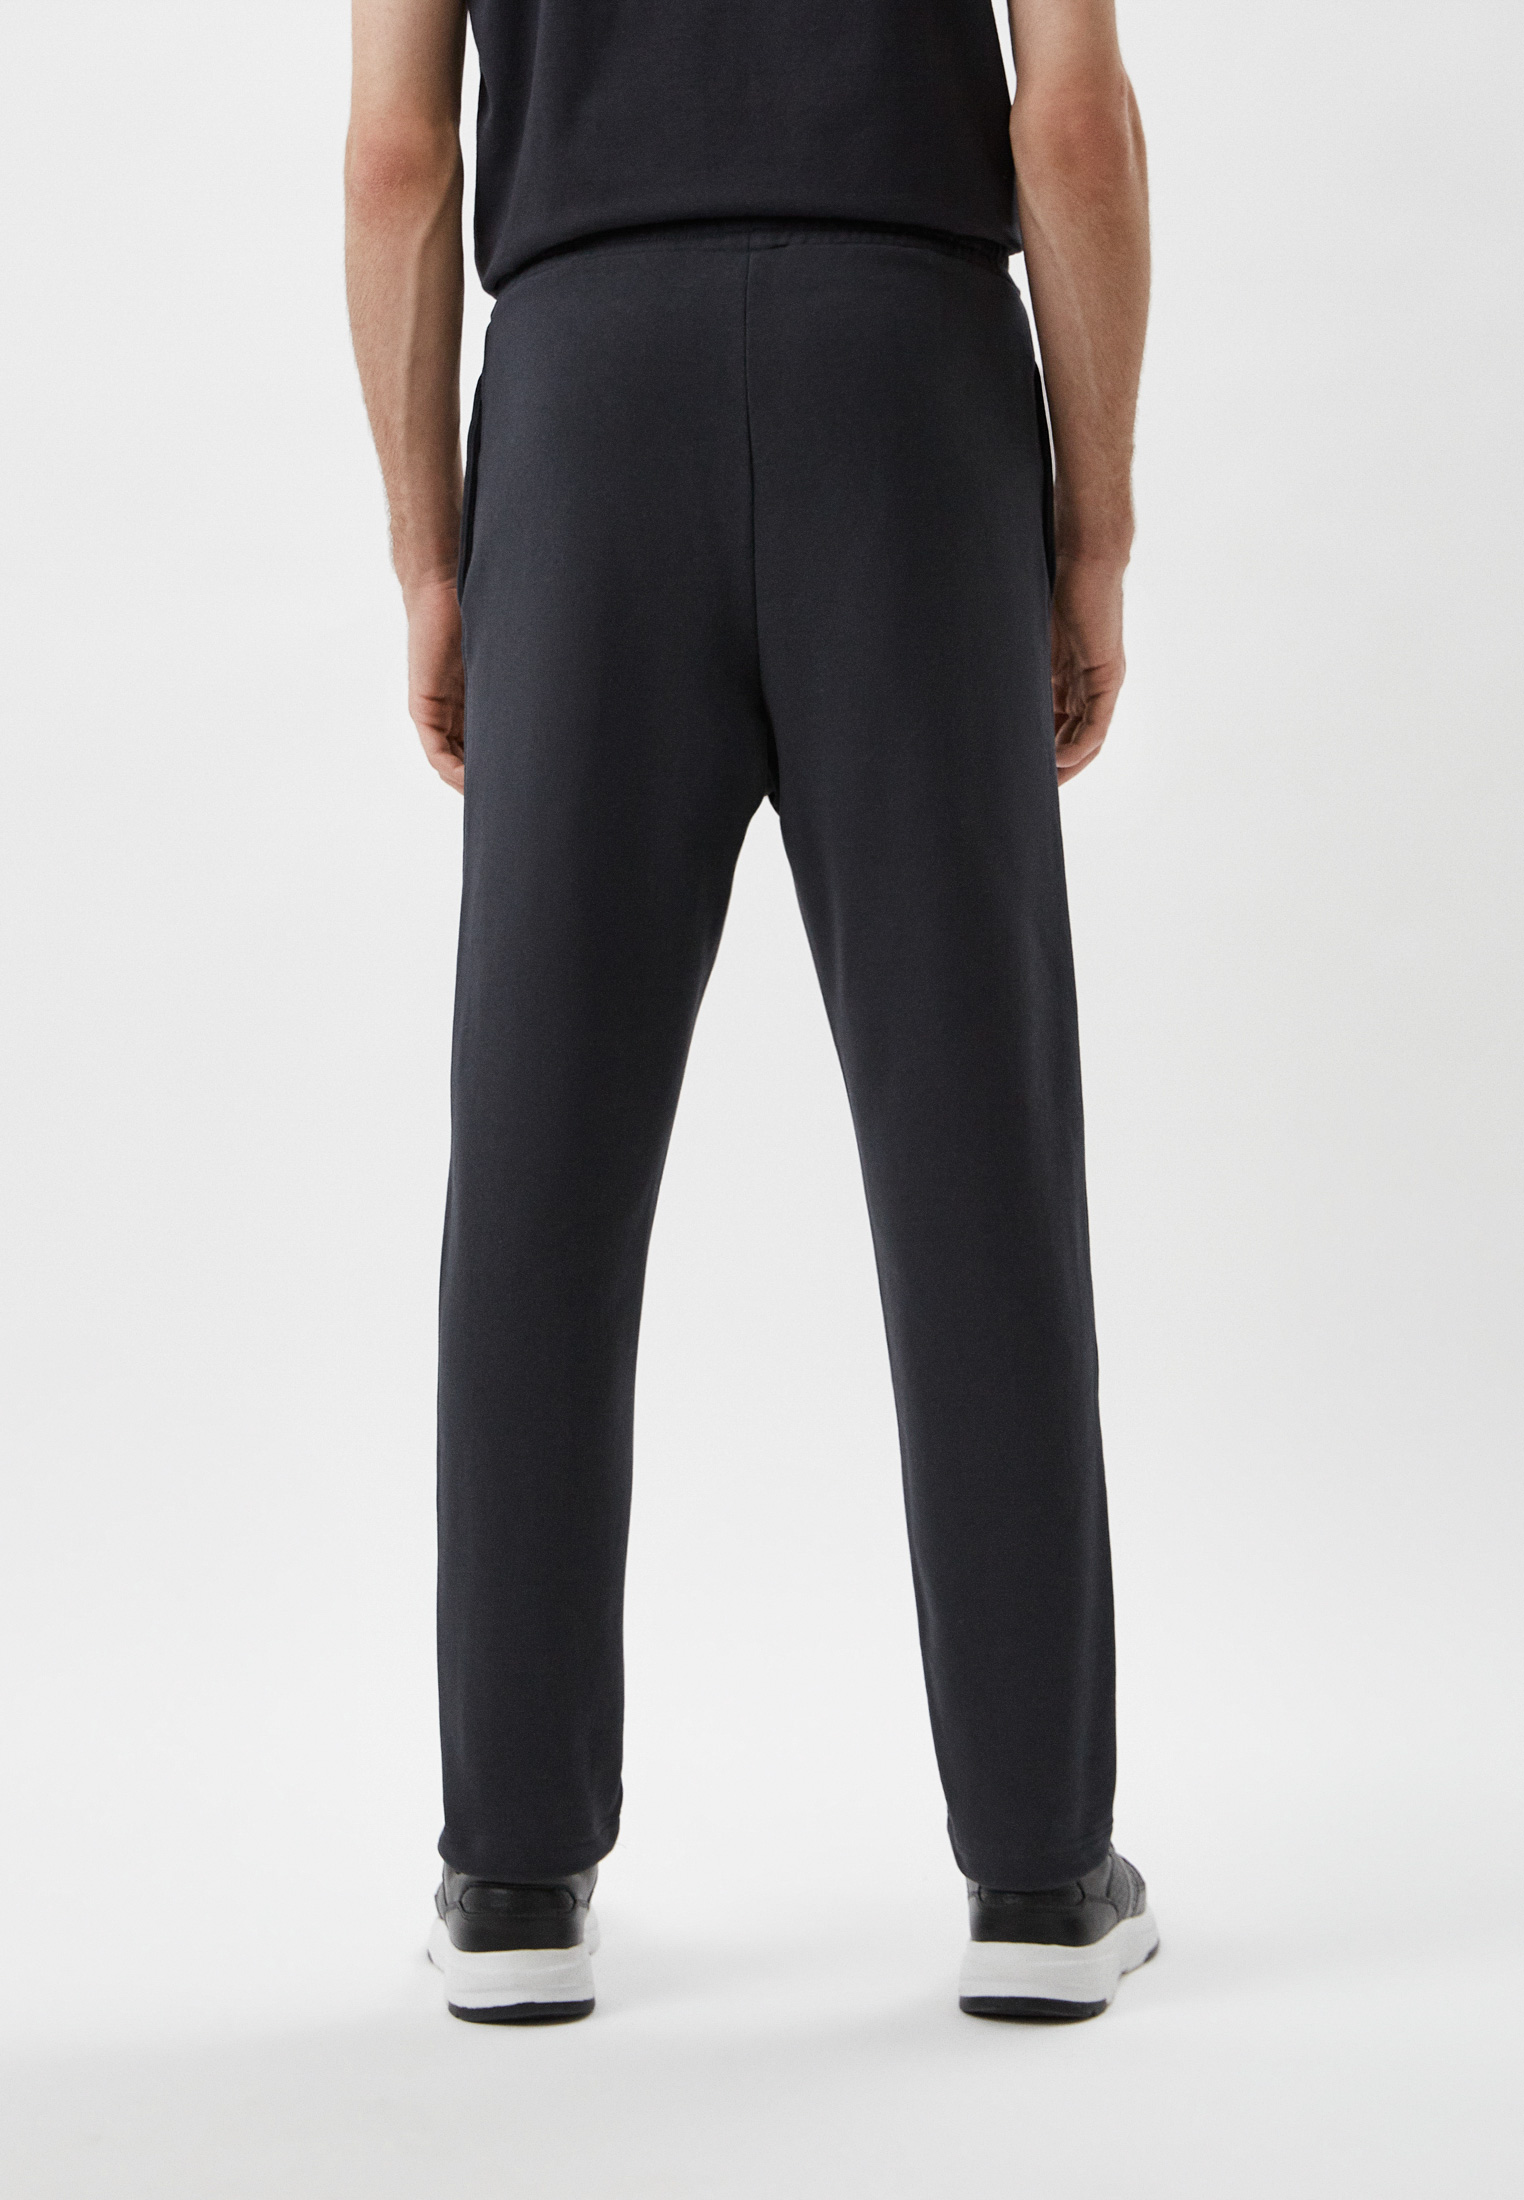 Мужские спортивные брюки Baldinini (Балдинини) M16: изображение 3